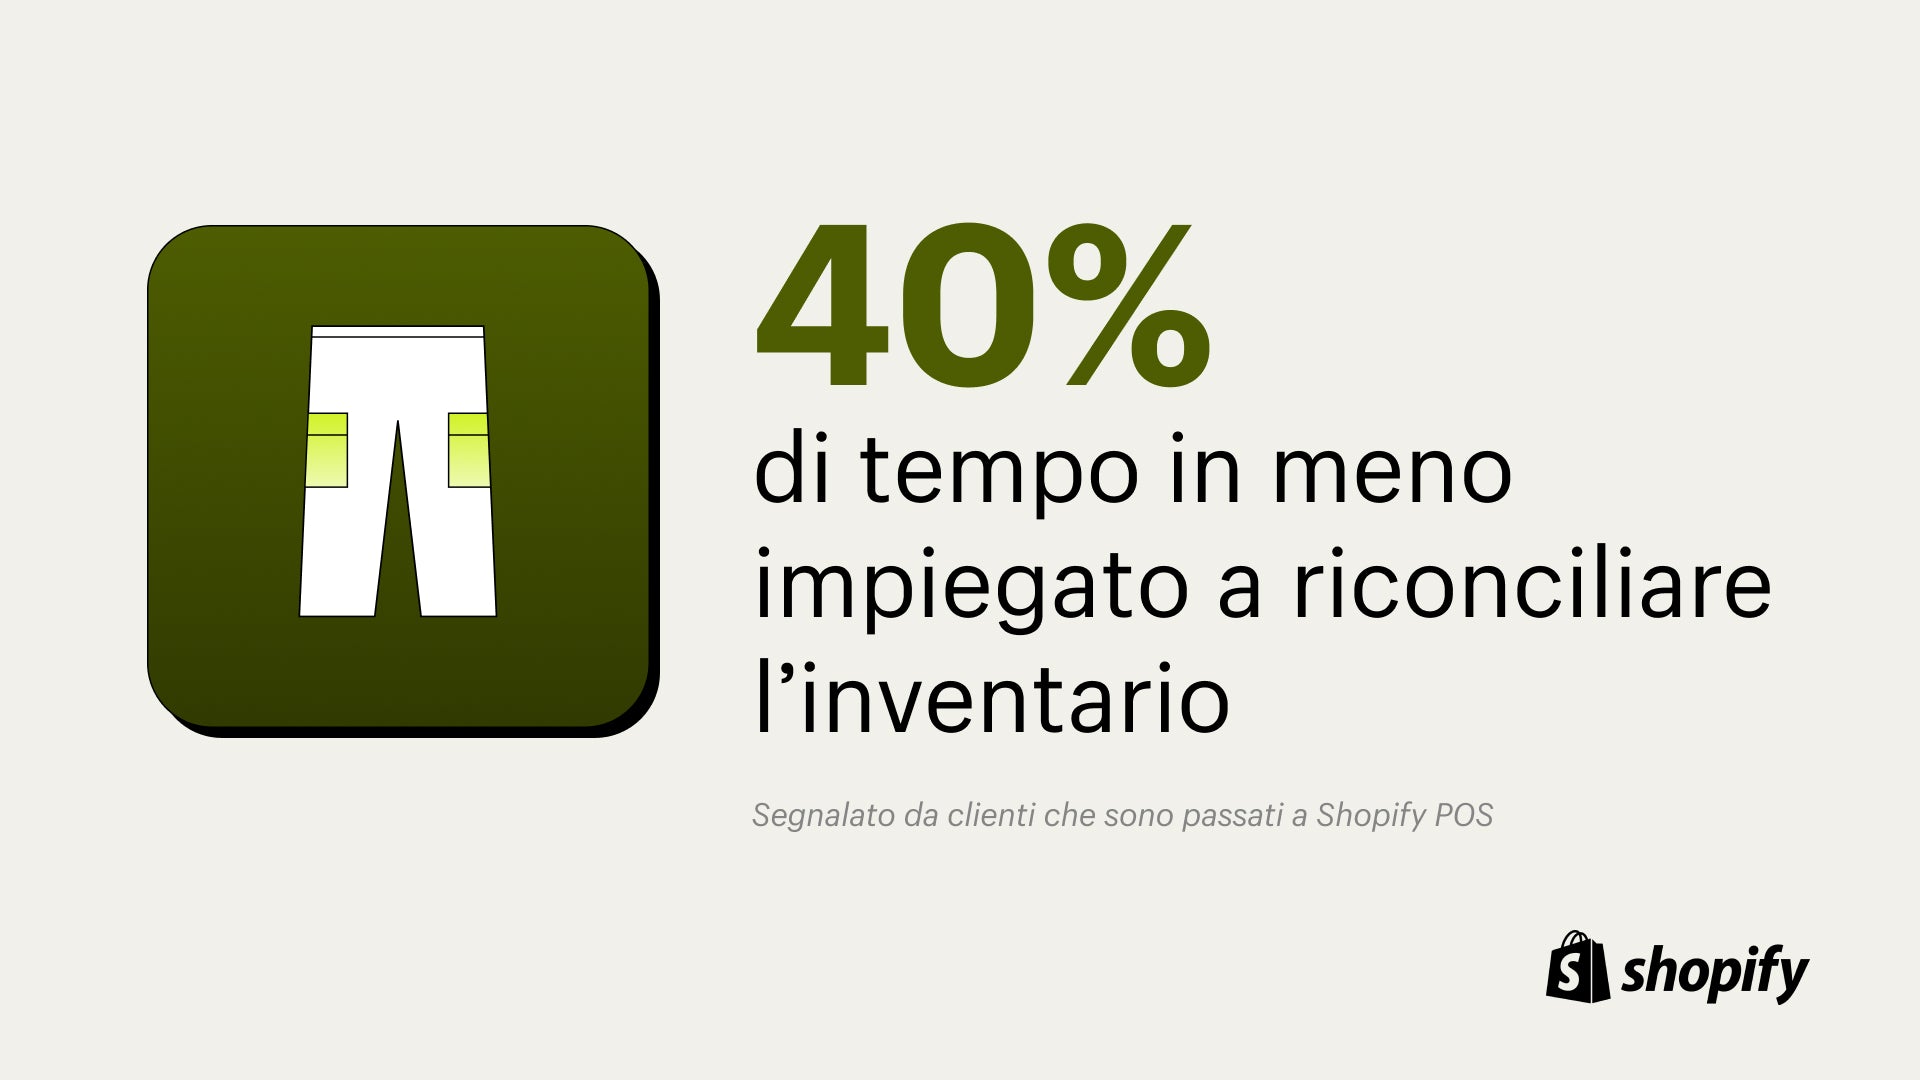 Immagine di pantaloni bianchi su sfondo verde con un fatto che afferma che viene dedicato il 40% in meno di tempo alla registrazione dell'inventario con Shopify POS